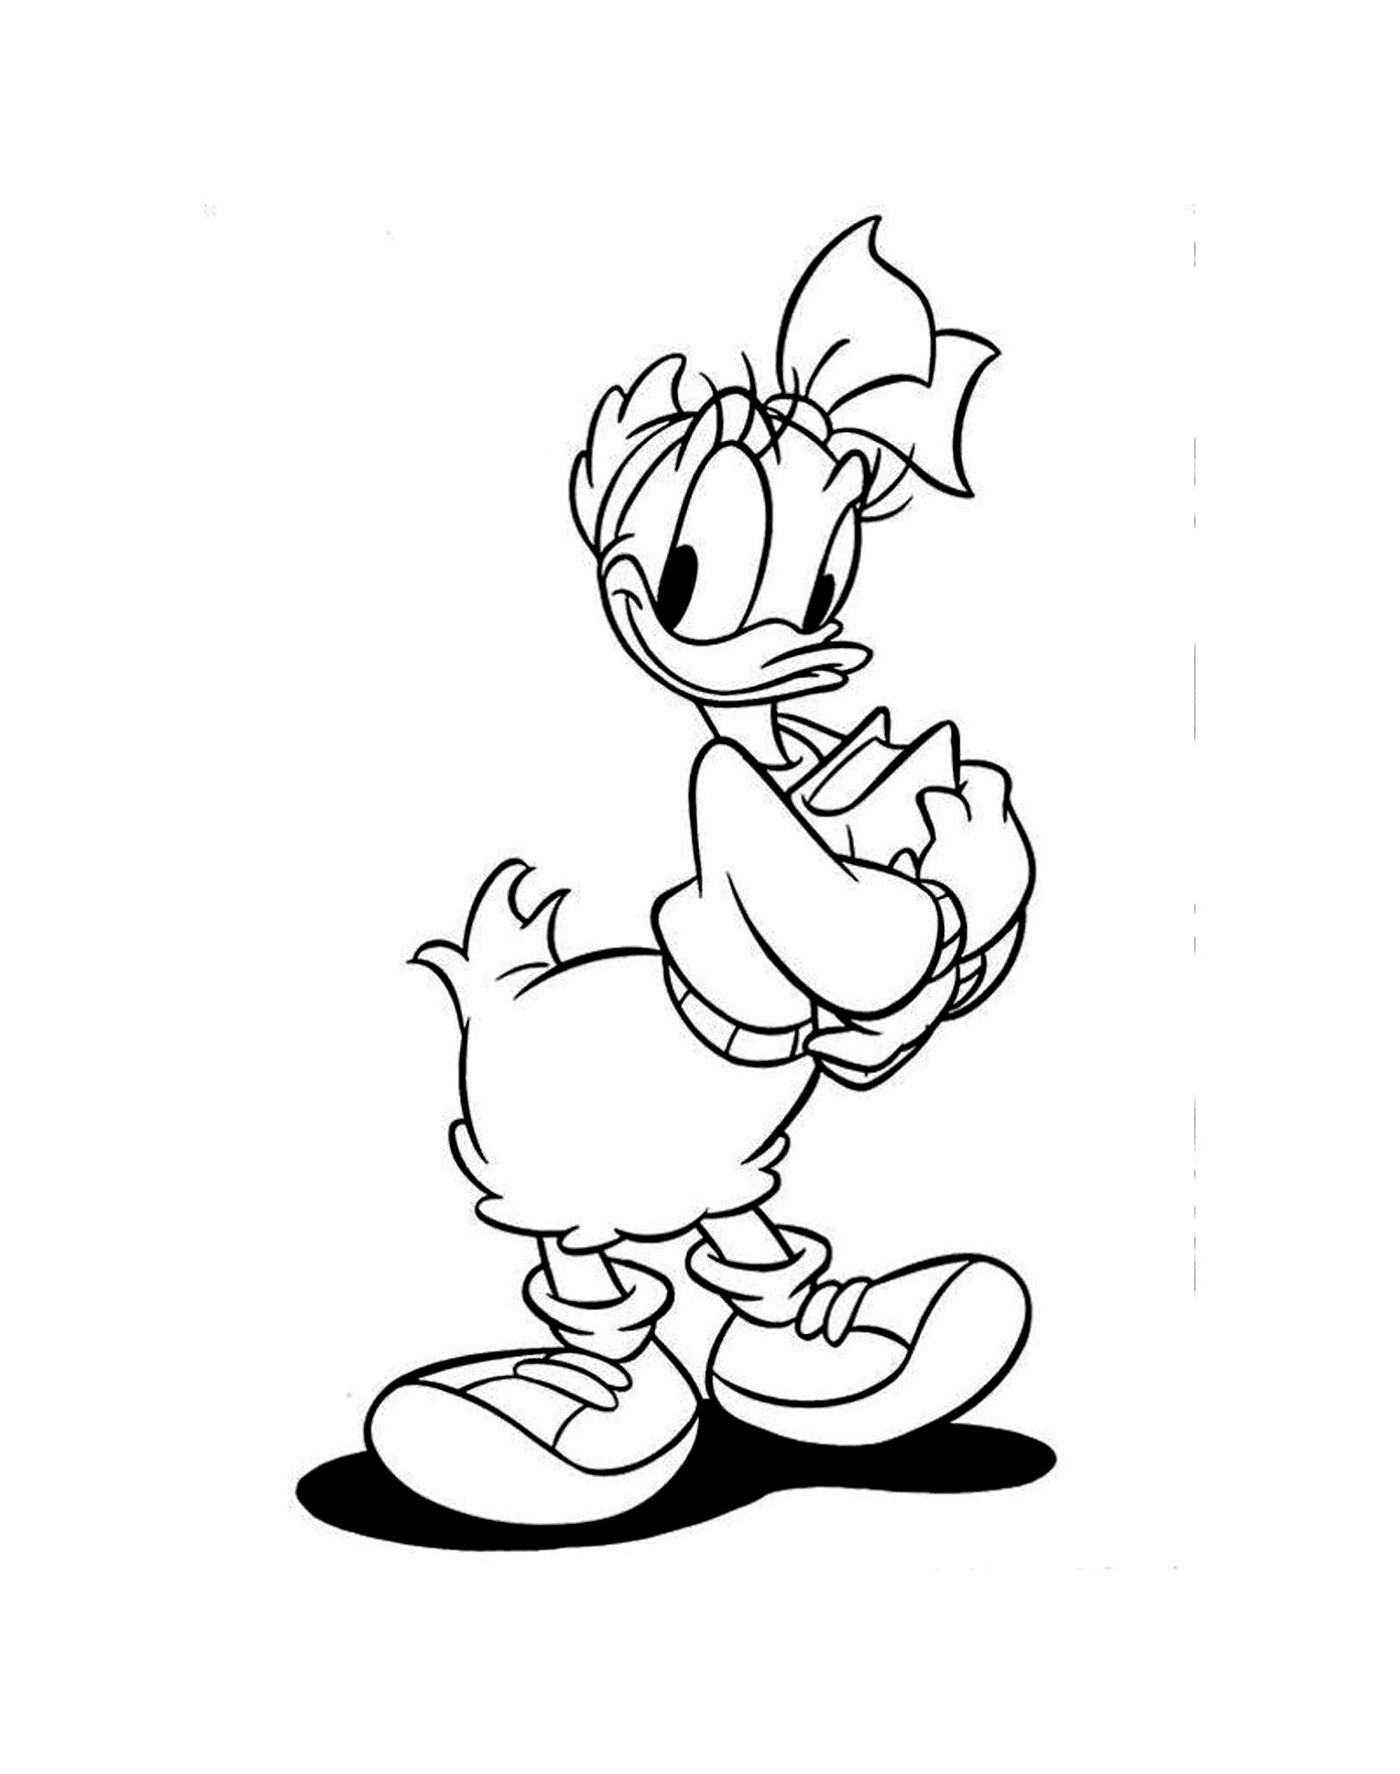   Donald Duck amoureux de Daisy Duck 